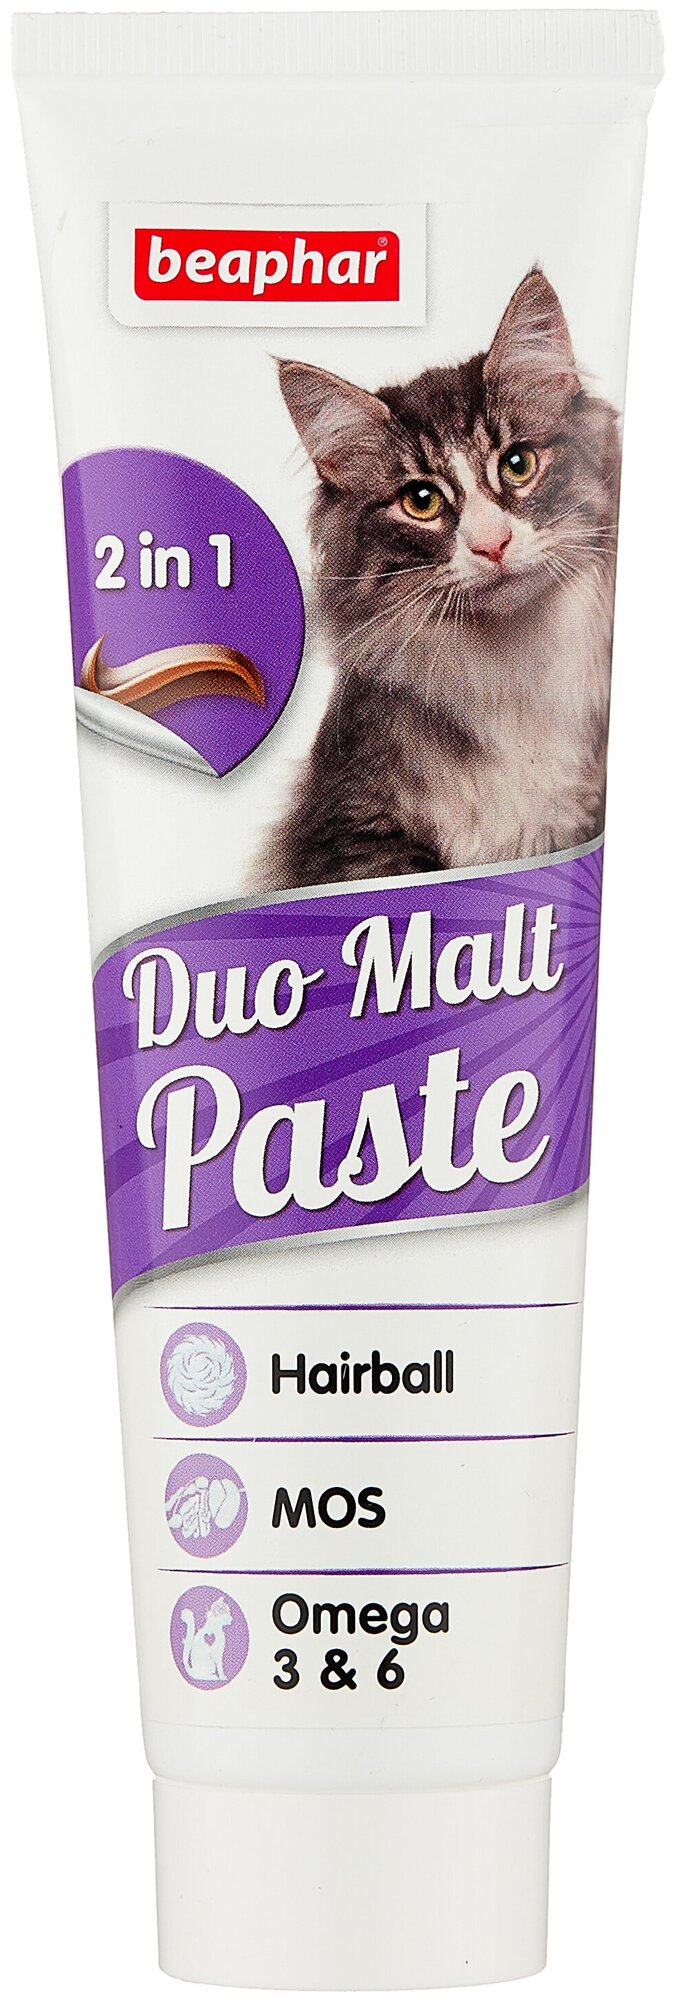 Beaphar Duo Malt Paste паста для кошек, вывод шерсти из кишечника, 100 гр